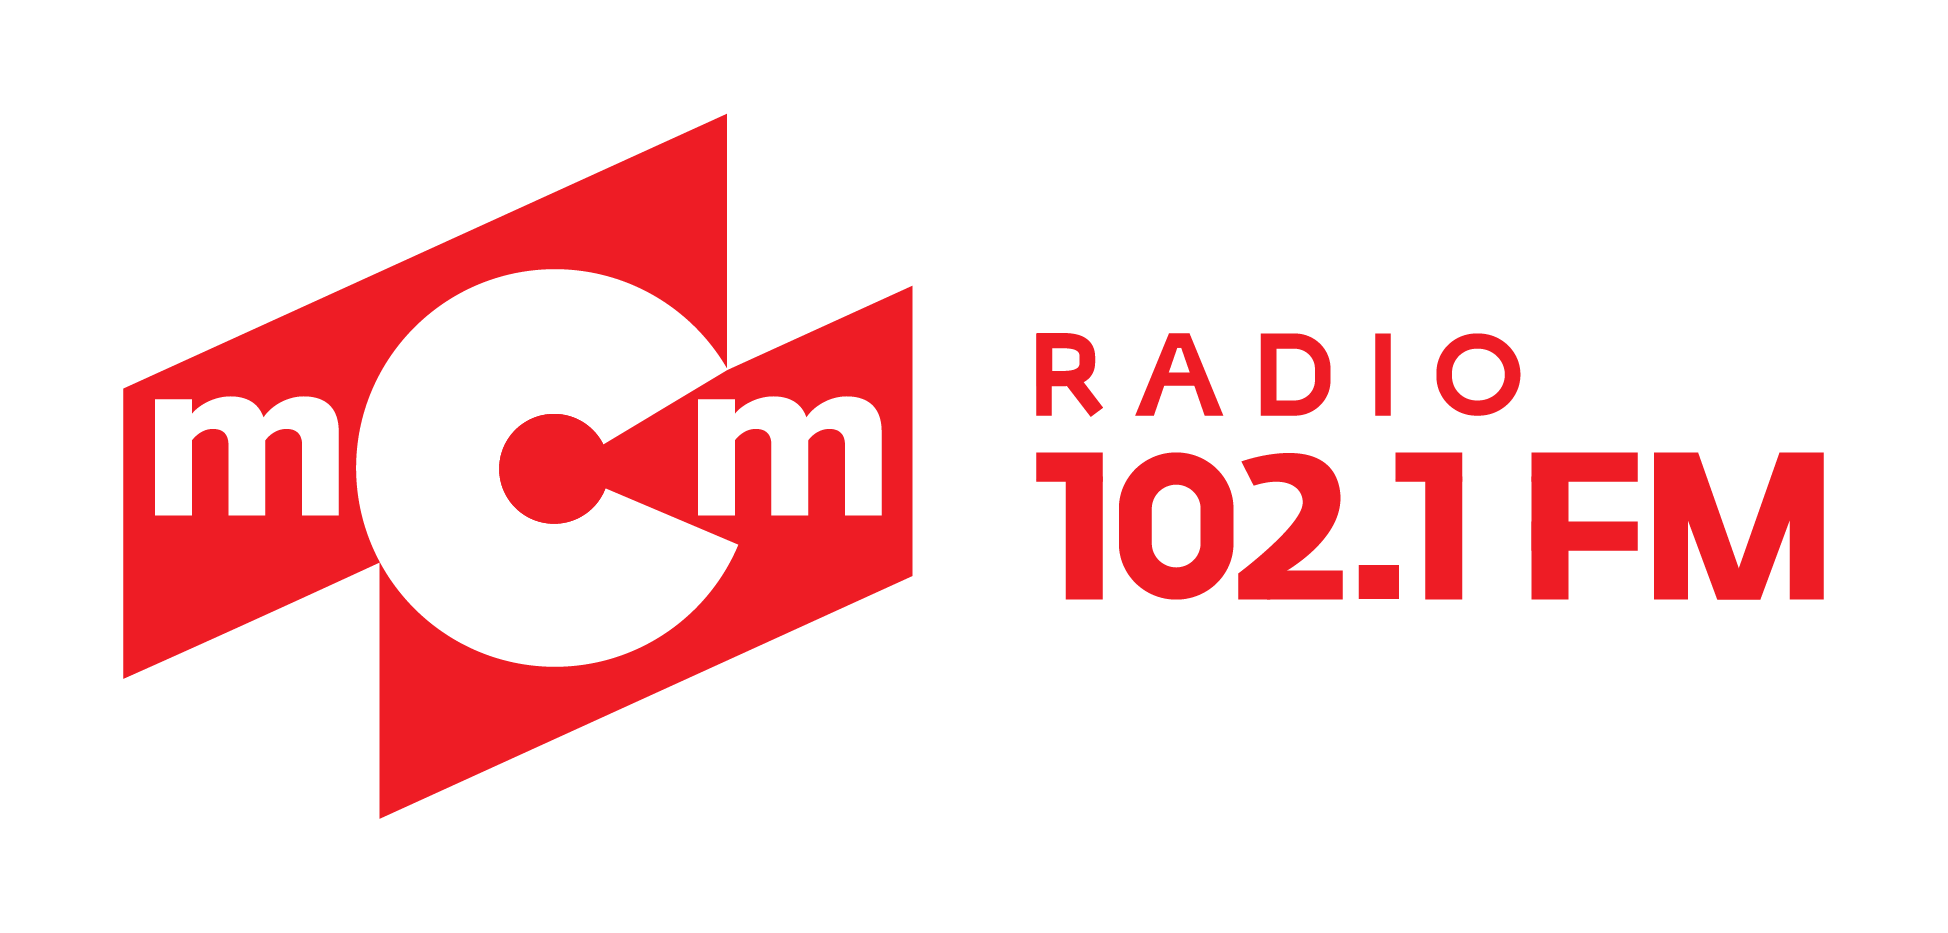 MCM радио. Радио МСМ логотип. МСМ радио Иркутск. Логотип радио МСМ 102.1. Радио торок